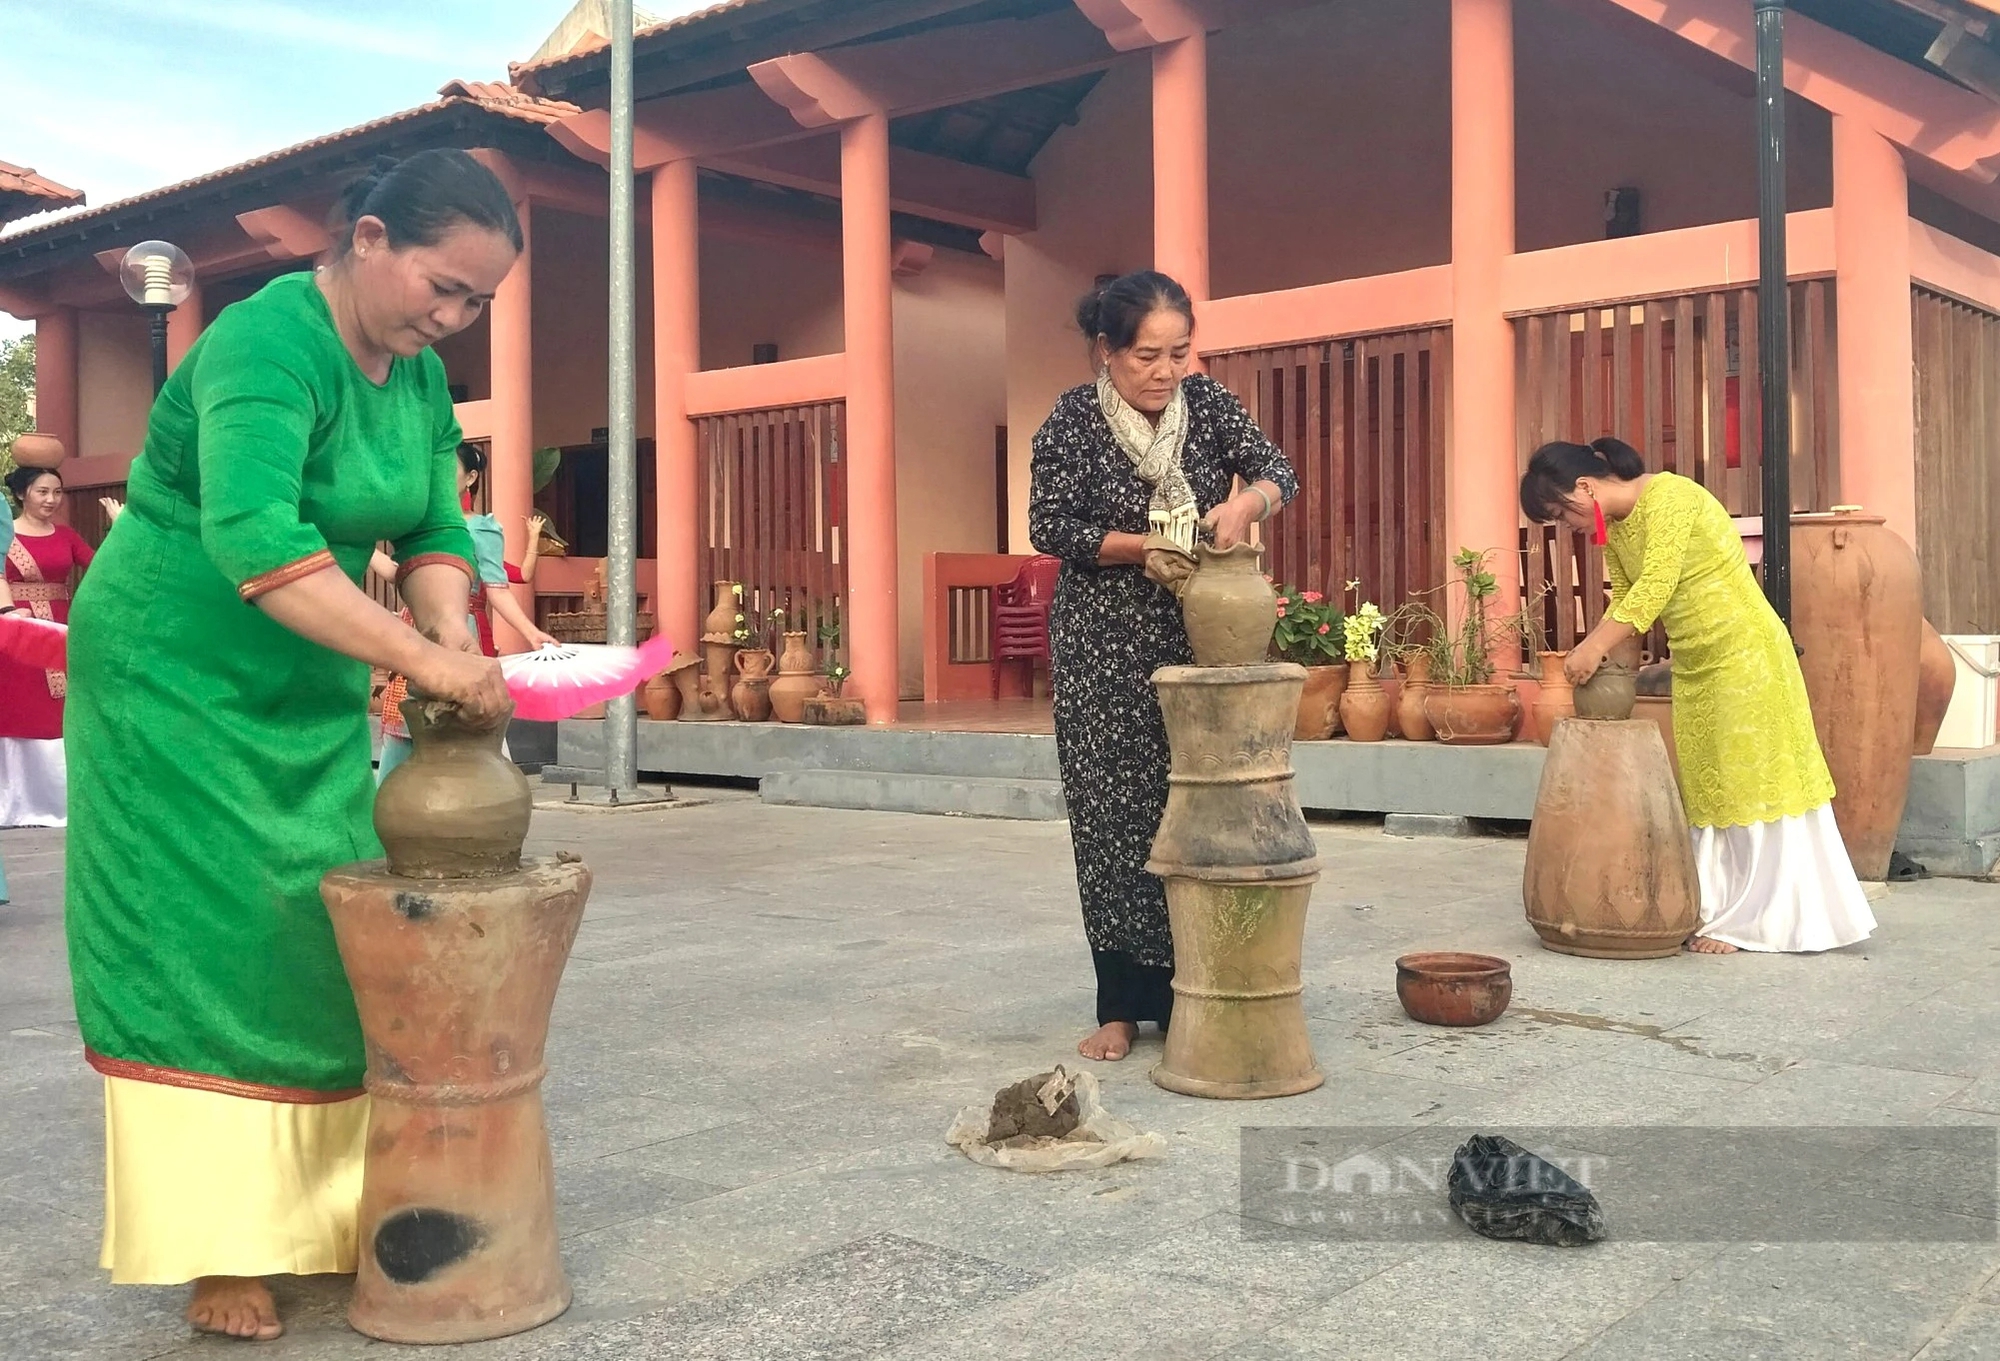 Cung đường di sản gốm Bàu Trúc trên phố đi bộ Phan Rang – Tháp Chàm ở Ninh Thuận- Ảnh 1.